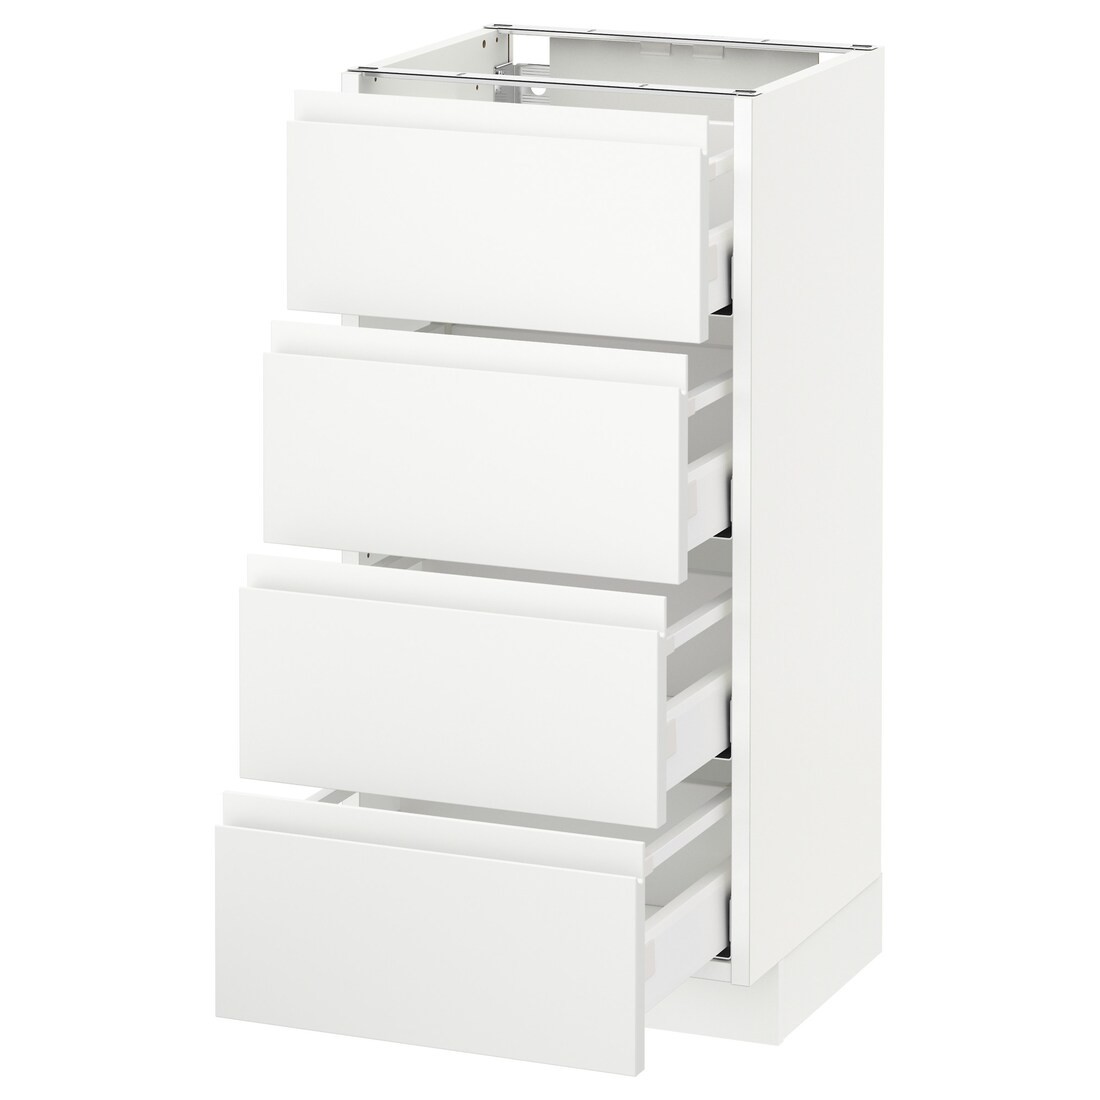 IKEA METOD МЕТОД / MAXIMERA МАКСИМЕРА Напольный шкаф с ящиками, белый / Voxtorp матовый белый, 40x37 см 59112784 591.127.84